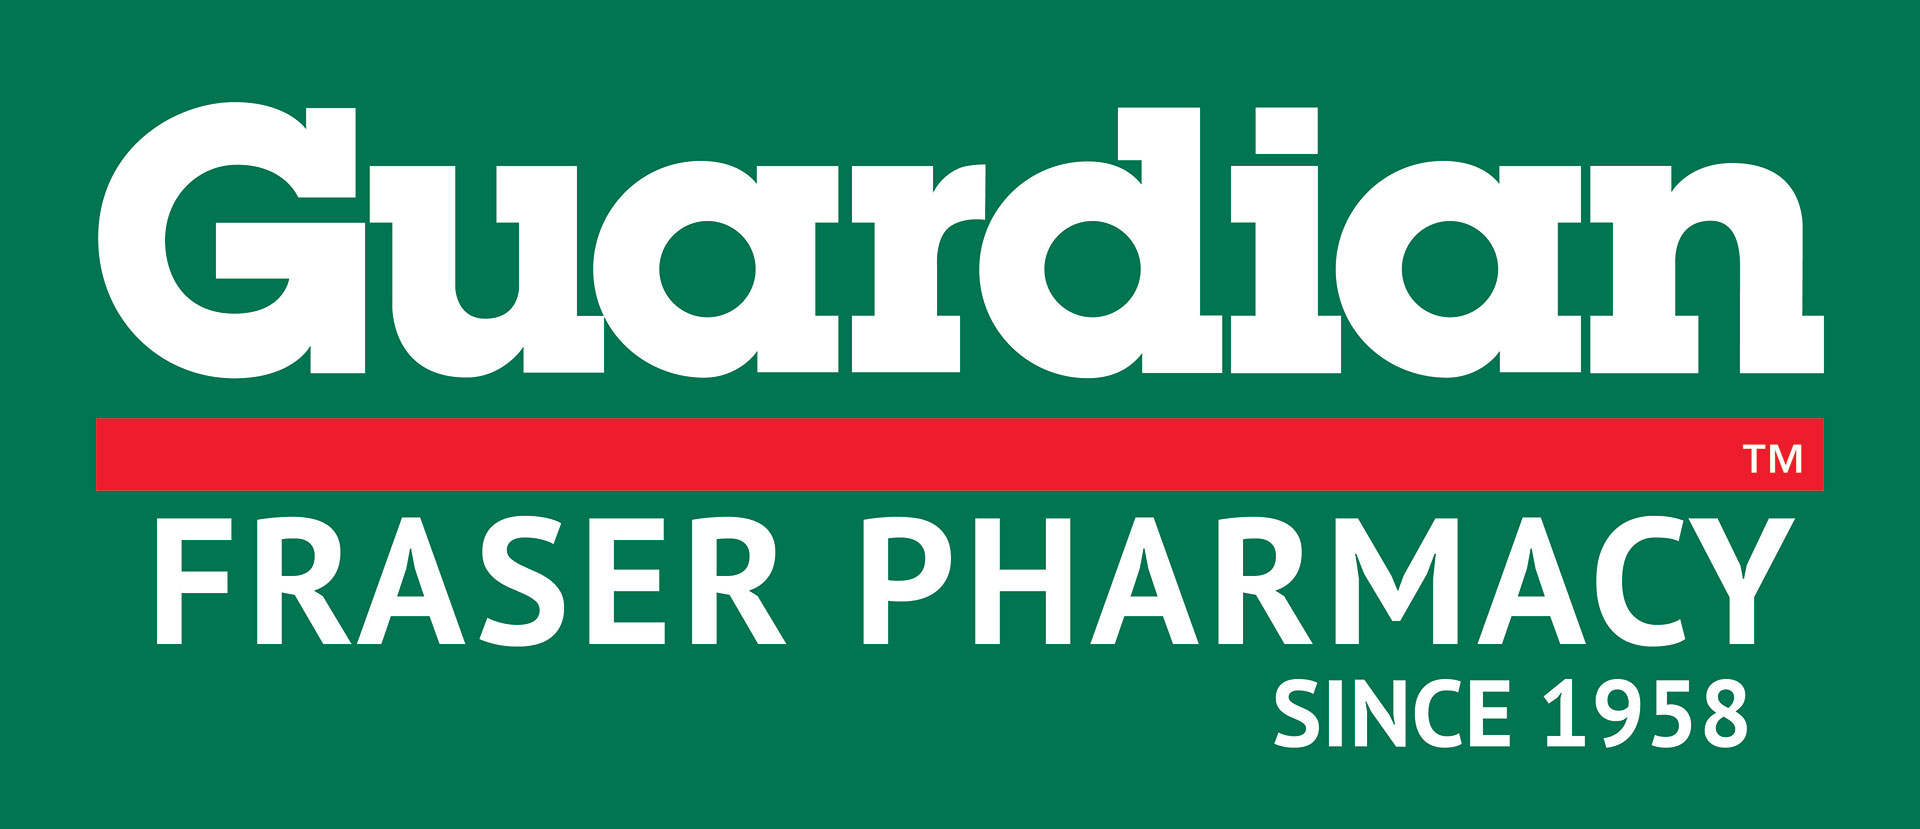 Guardian C.W. Fraser Pharmacy